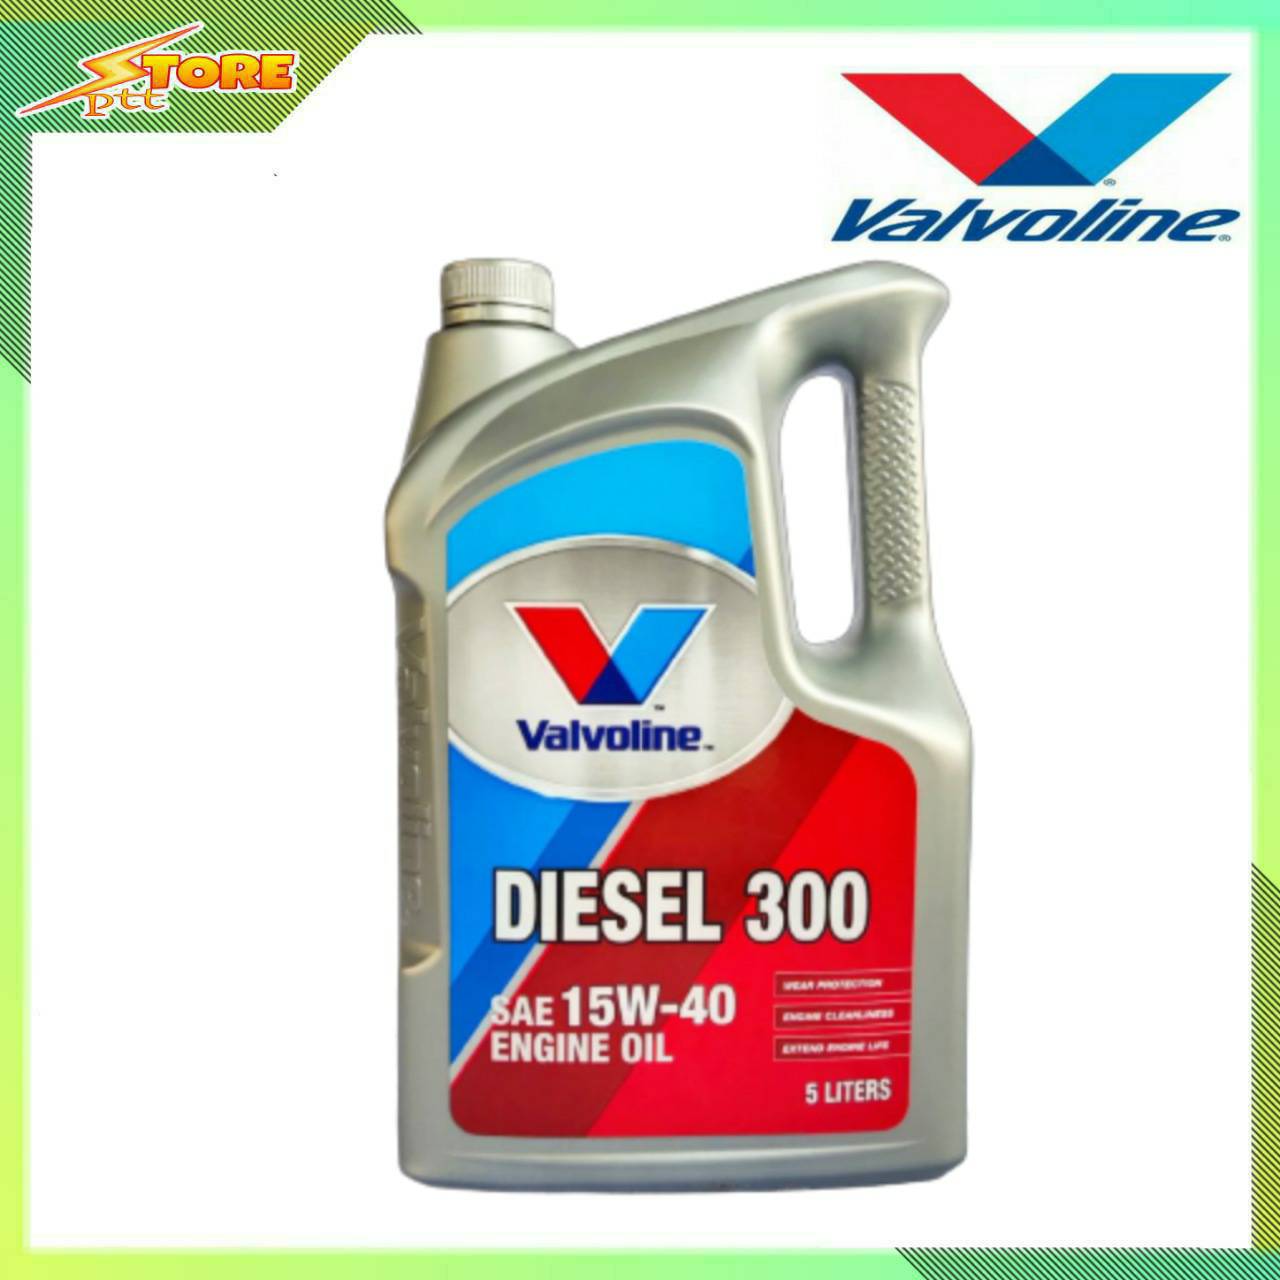 น้ำมันเครื่อง Valvoline Diesel 300 15W-40 ขนาด 5ลิตร *กึ่งสังเคราะห์ (วาโวลีน ดีเซล 300 15w-40 )